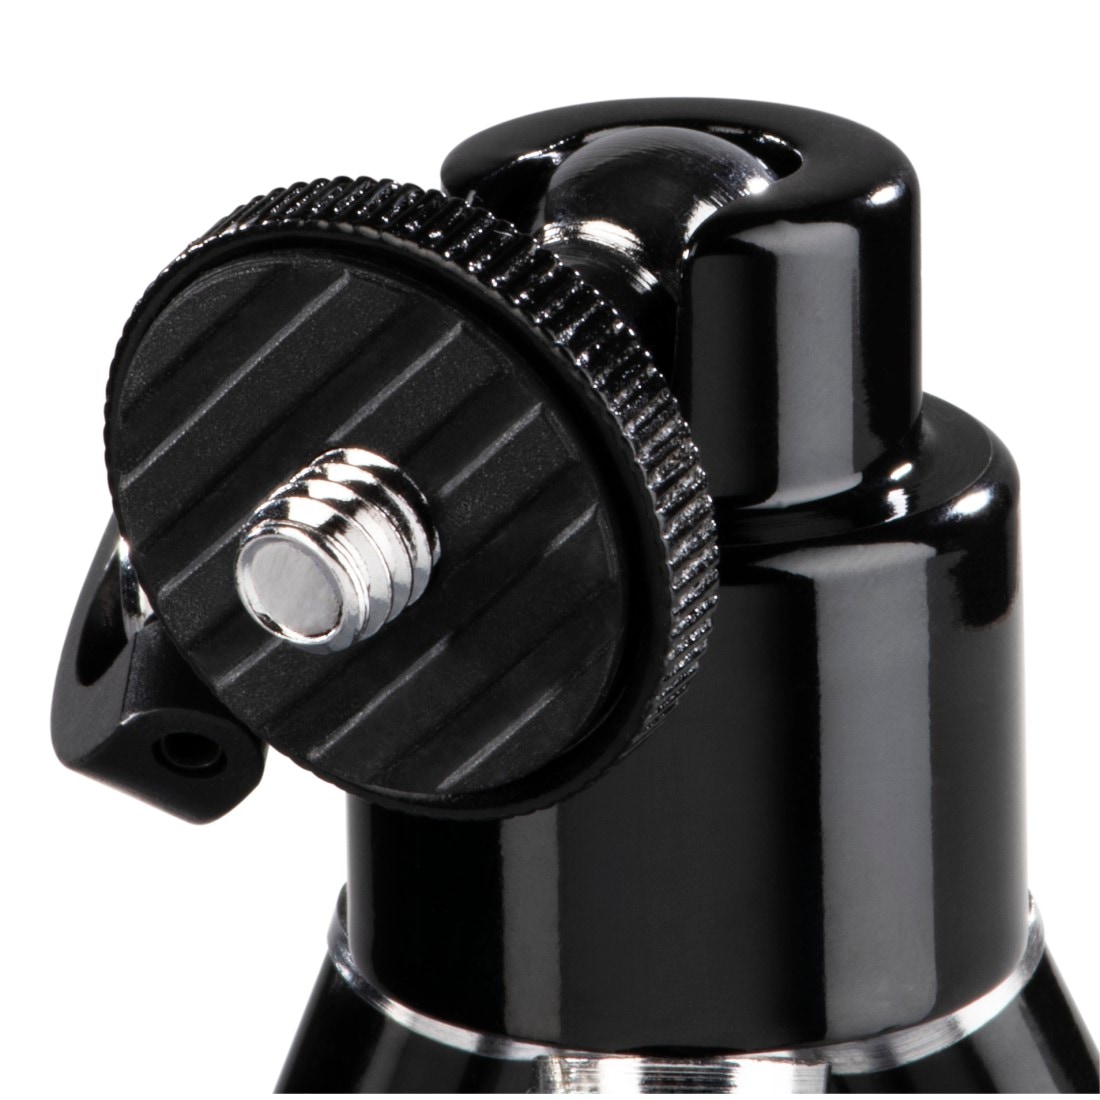 Hama Ministativ »Mini Stativ für Foto- und Videokameras, Mikrofone und Minilautsprecher«, mit 3D Kugelkopf, Beinsegment ausziehbar von 14 bis 21 cm, Schwarz